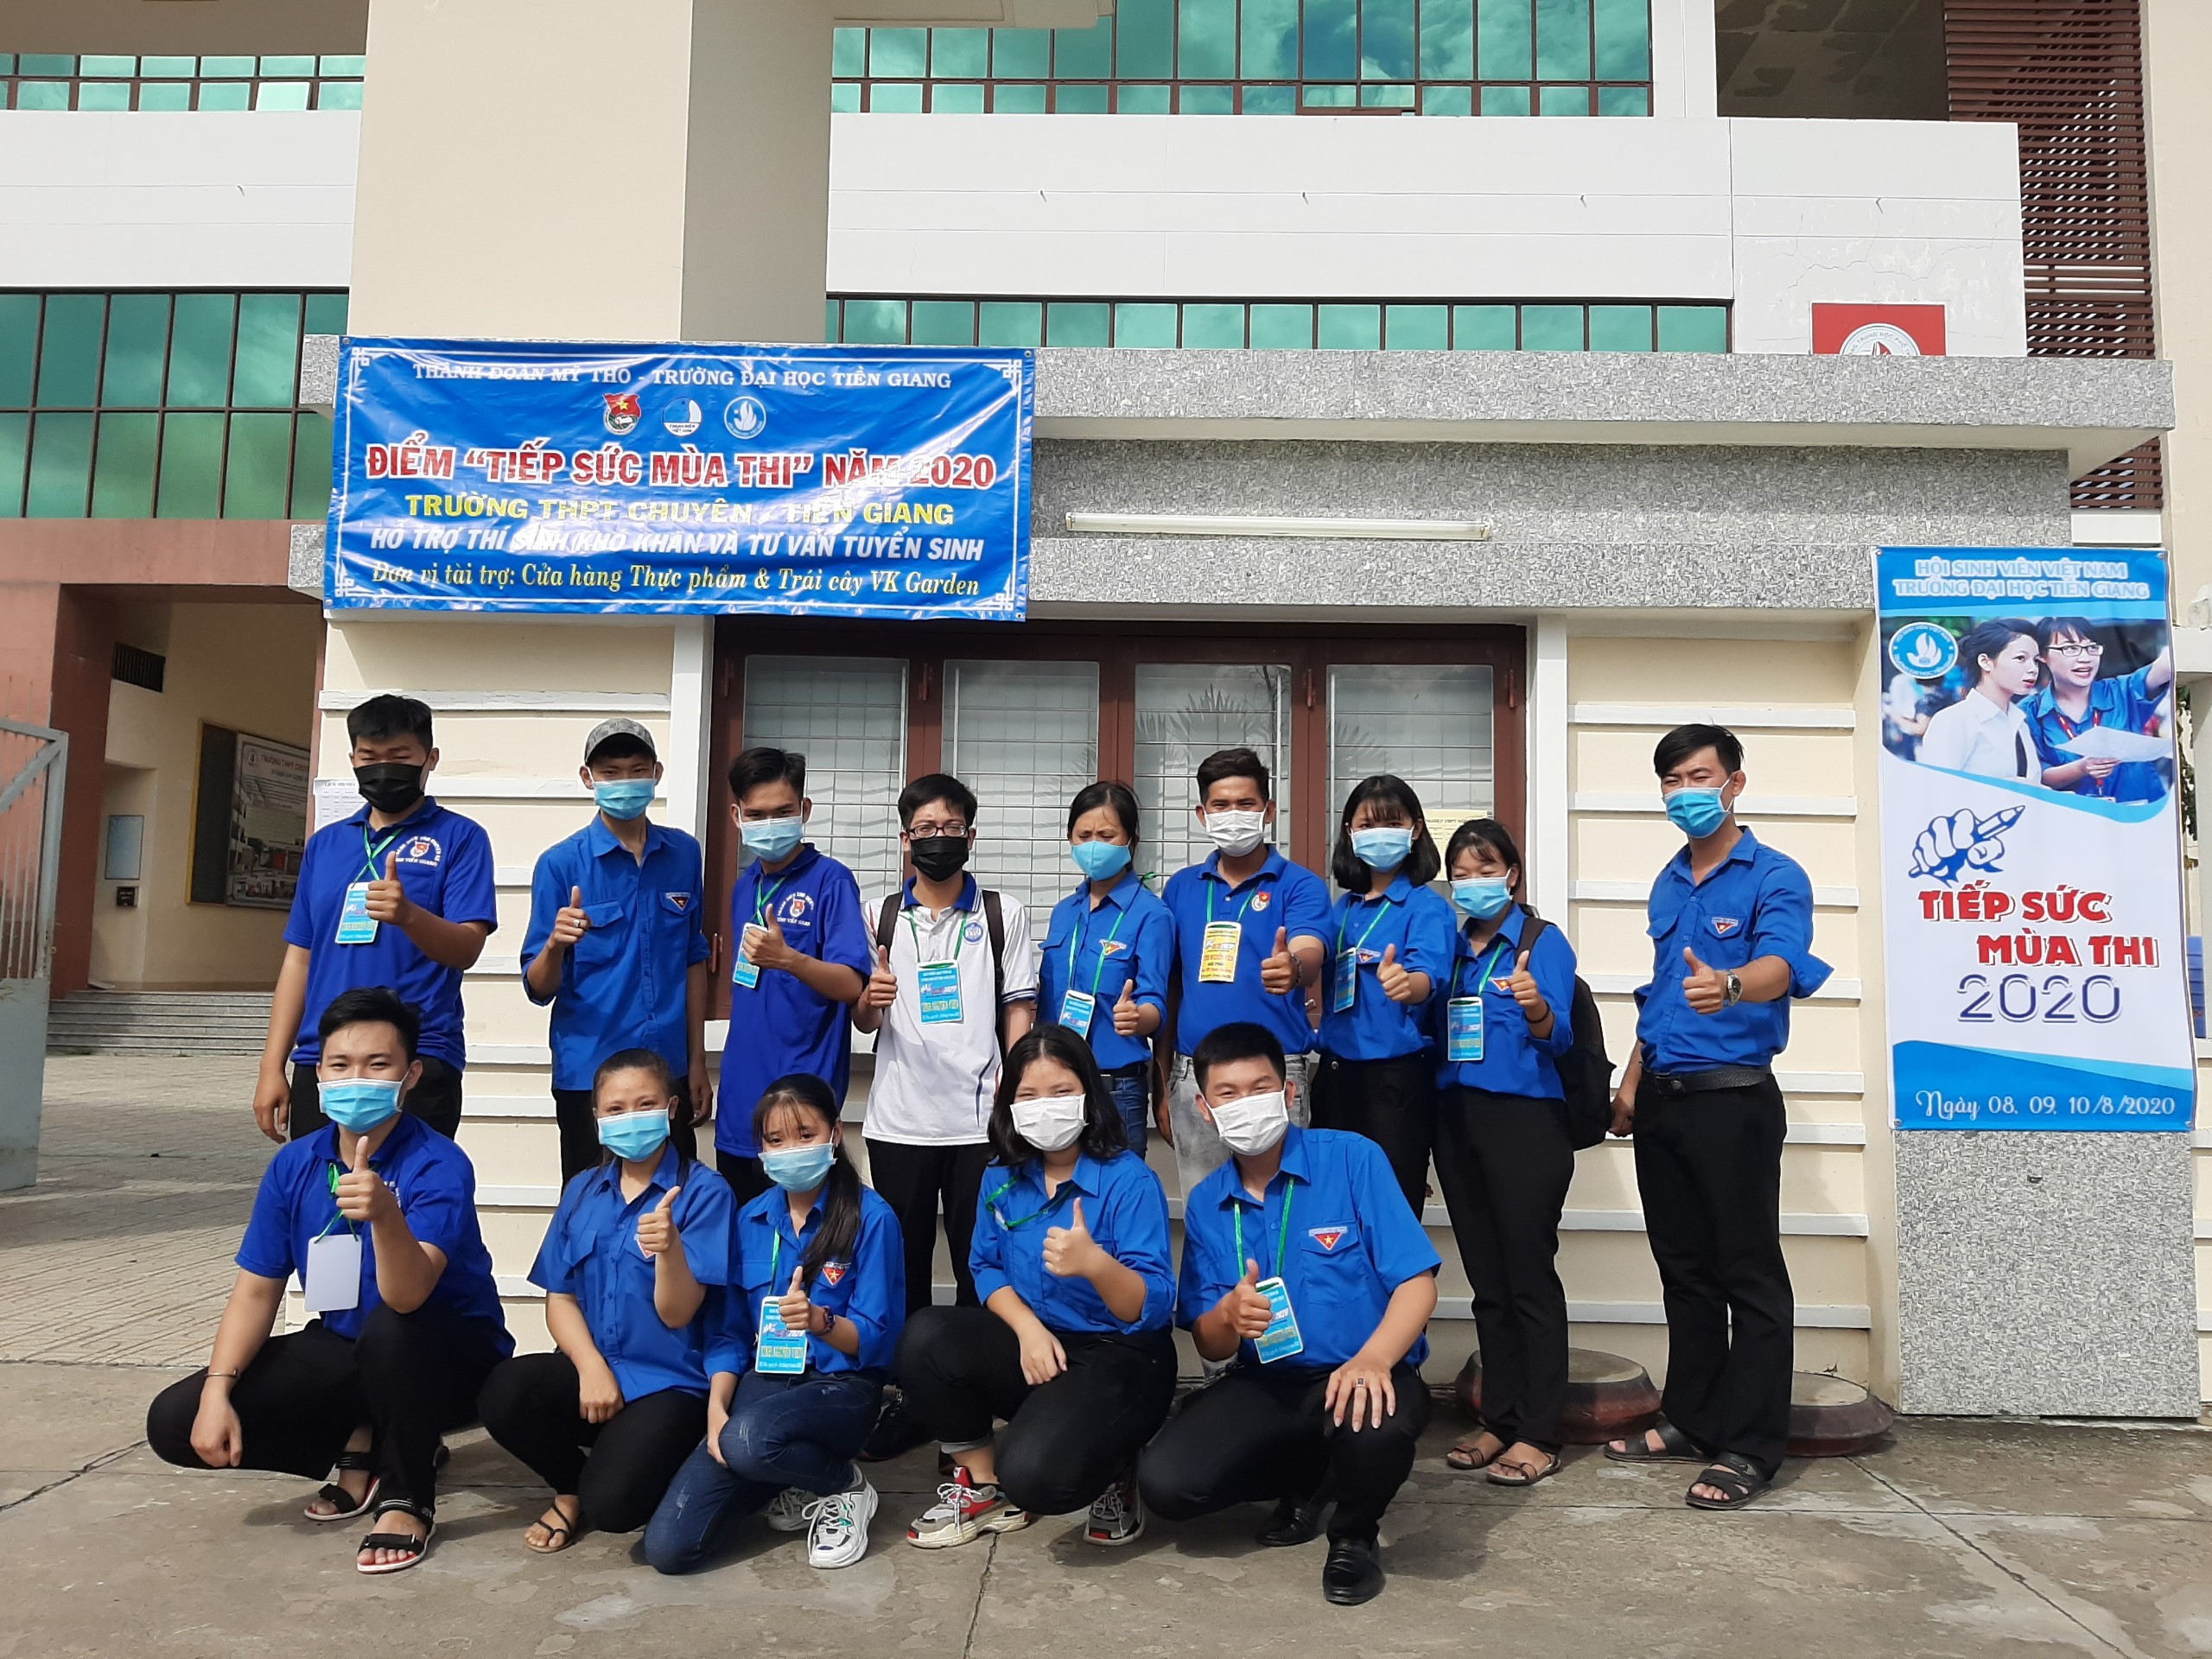 16 chiến sĩ tình nguyện Trường Đại học Tiền Giang tham gia Chương trình "Tiếp sức mùa thi" năm 2020